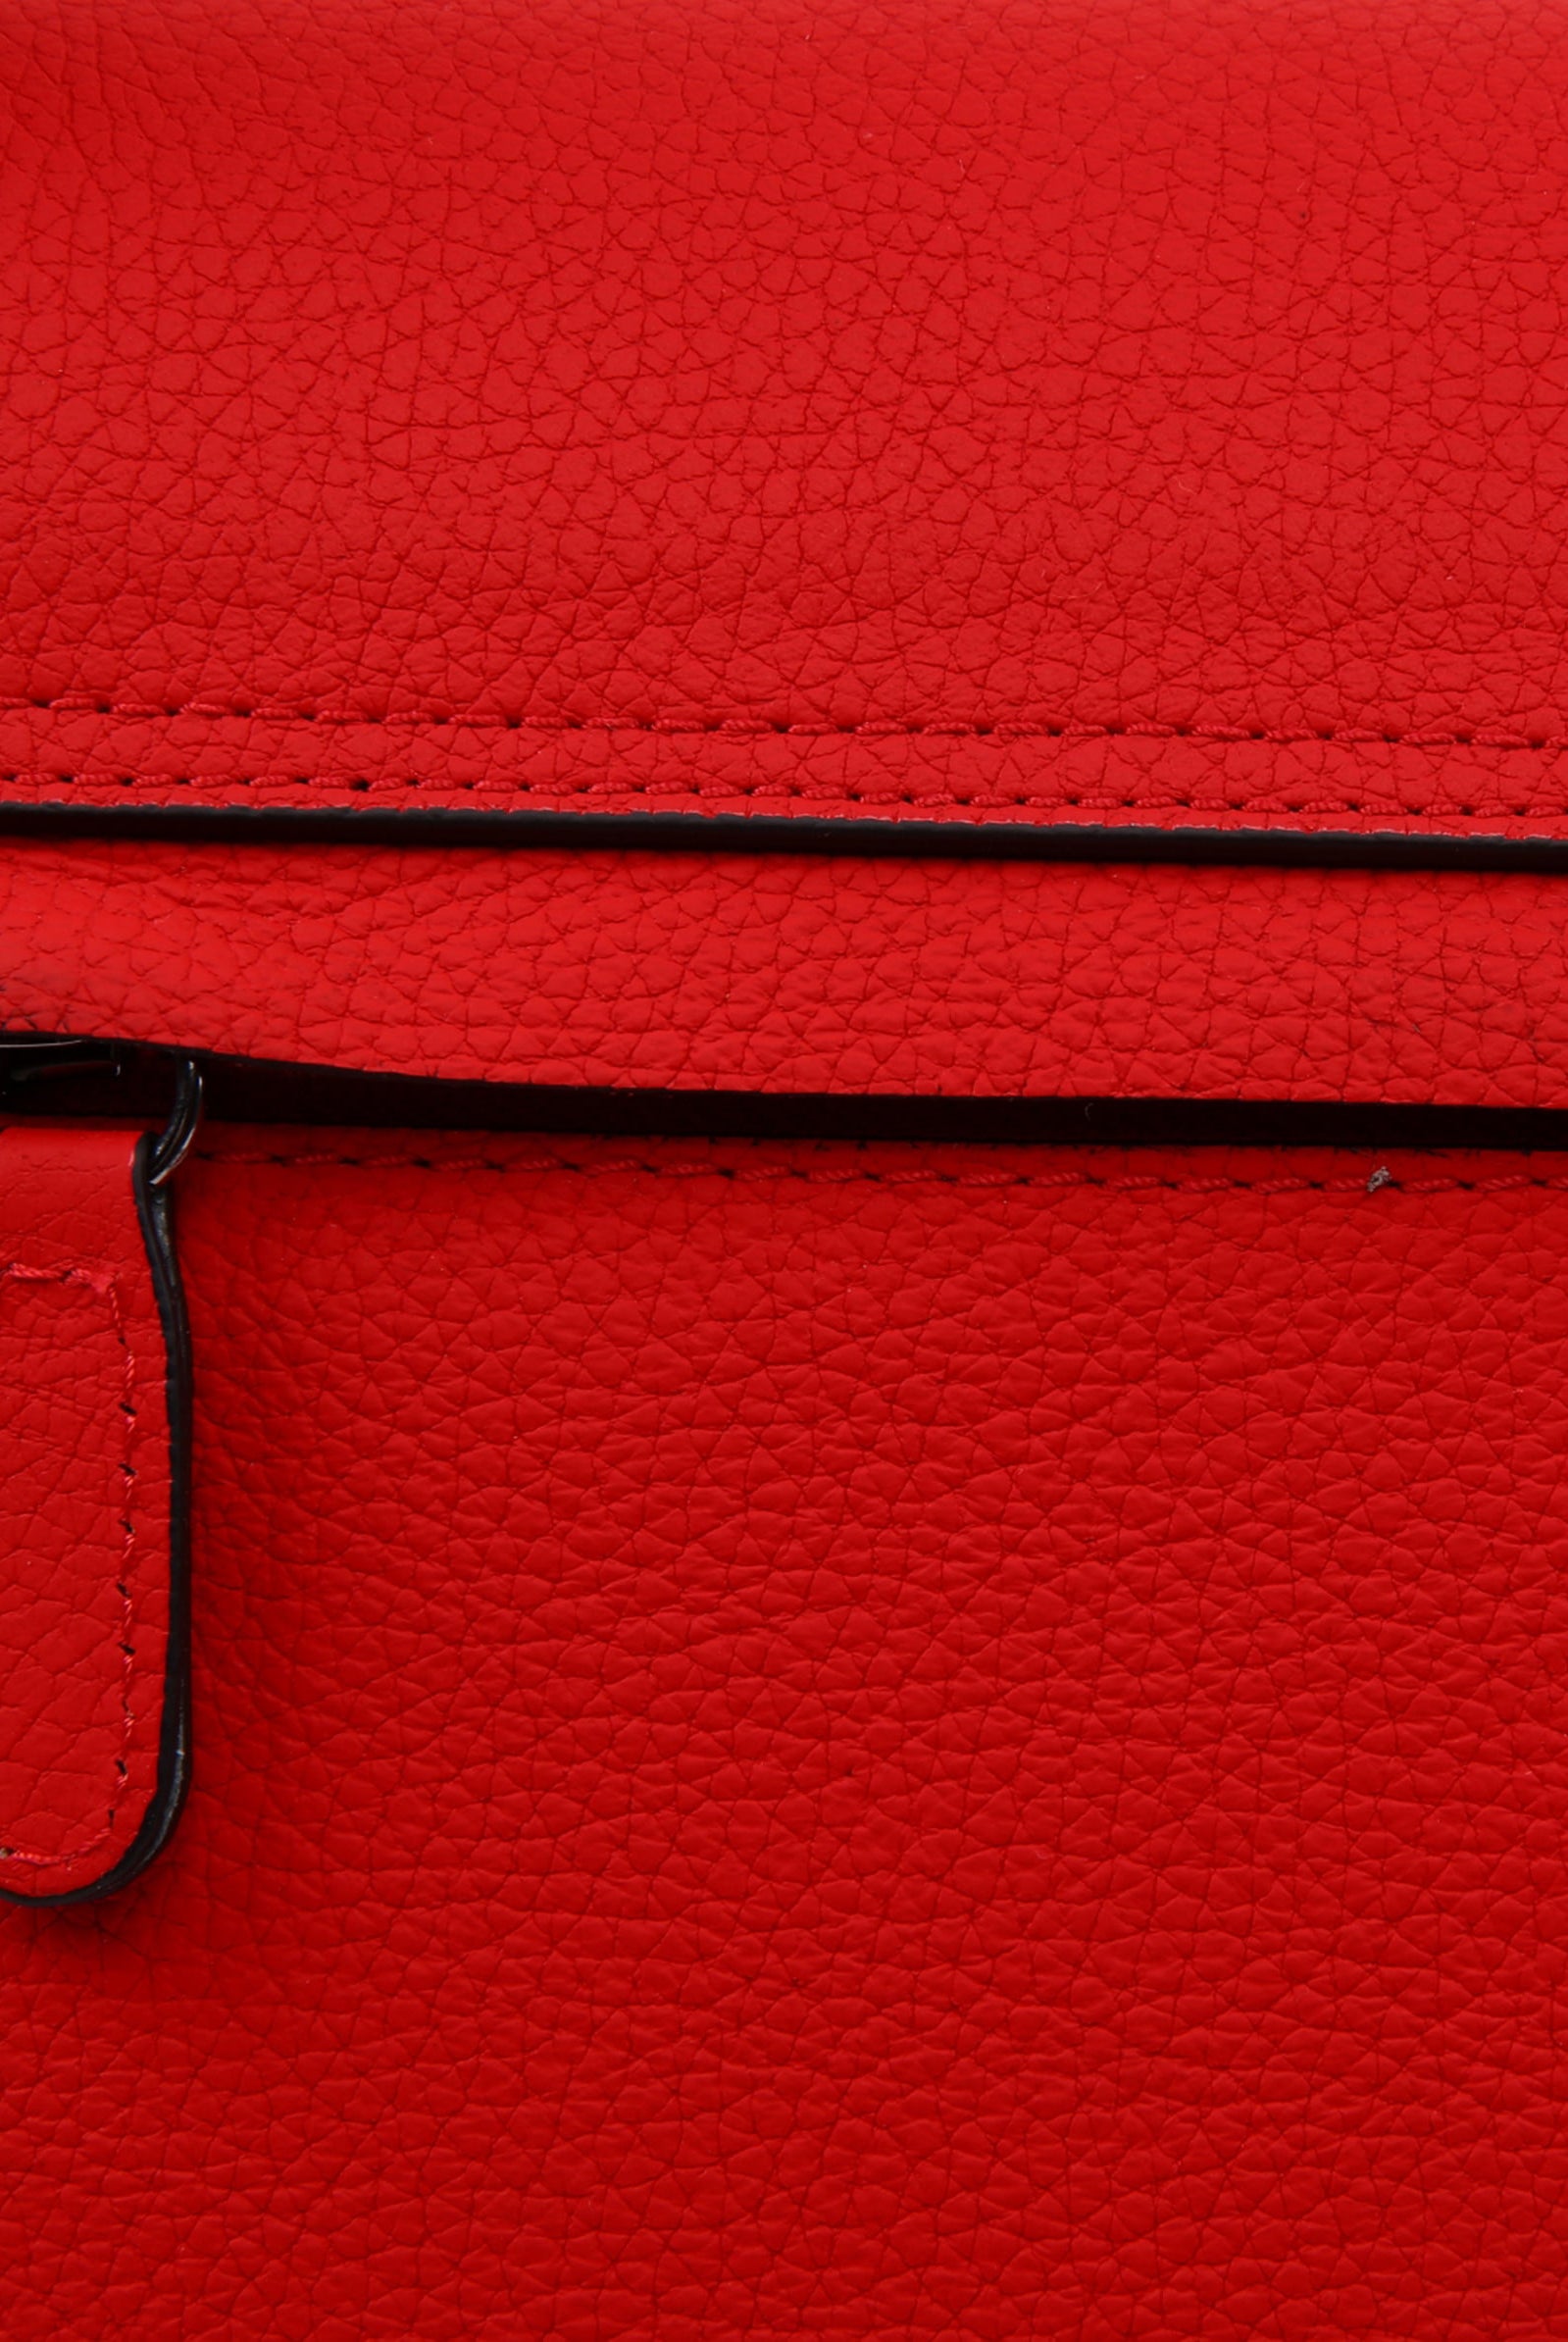 red leather handbags shoulder bag